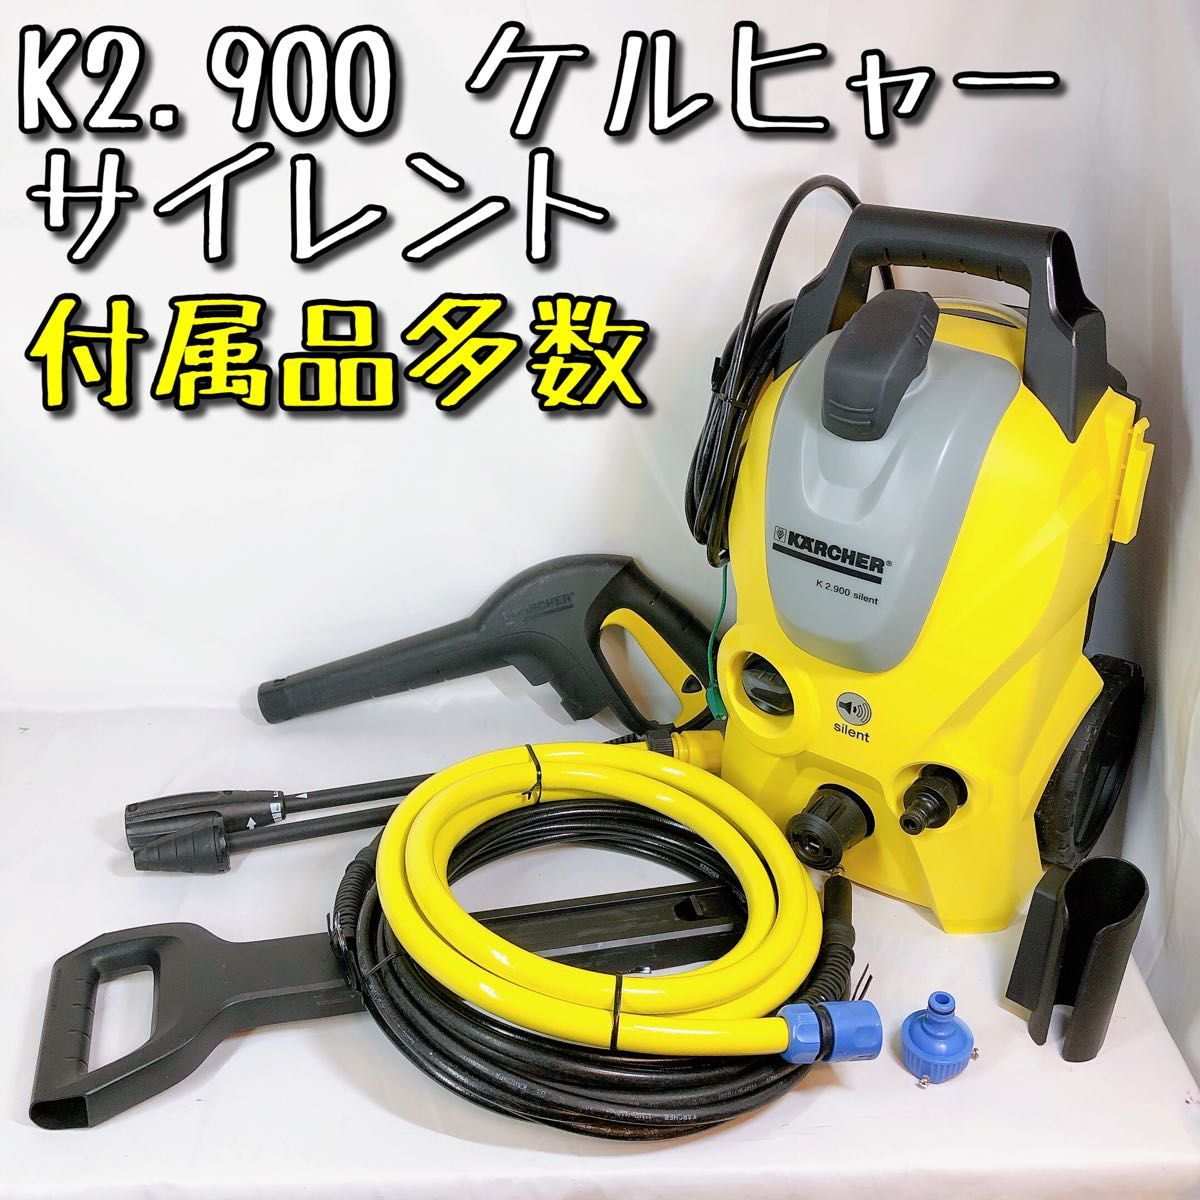 販売ページ 【美品】K2 900 ケルヒャー サイレント 高圧洗浄機 60Hz